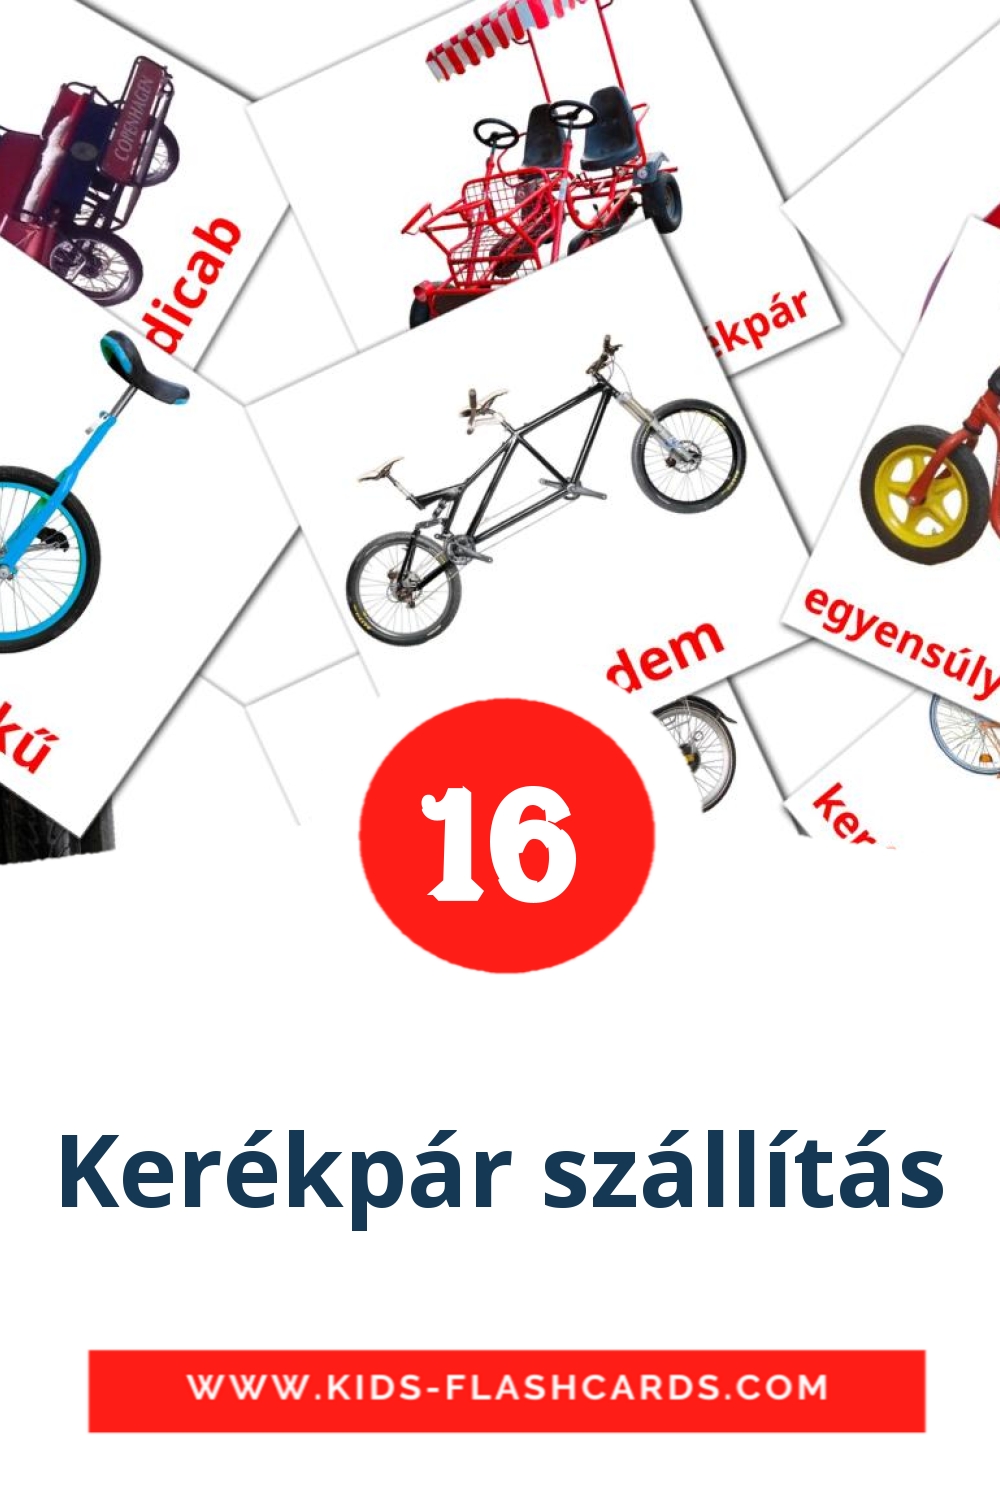 16 cartes illustrées de Kerékpár szállítás pour la maternelle en hongrois